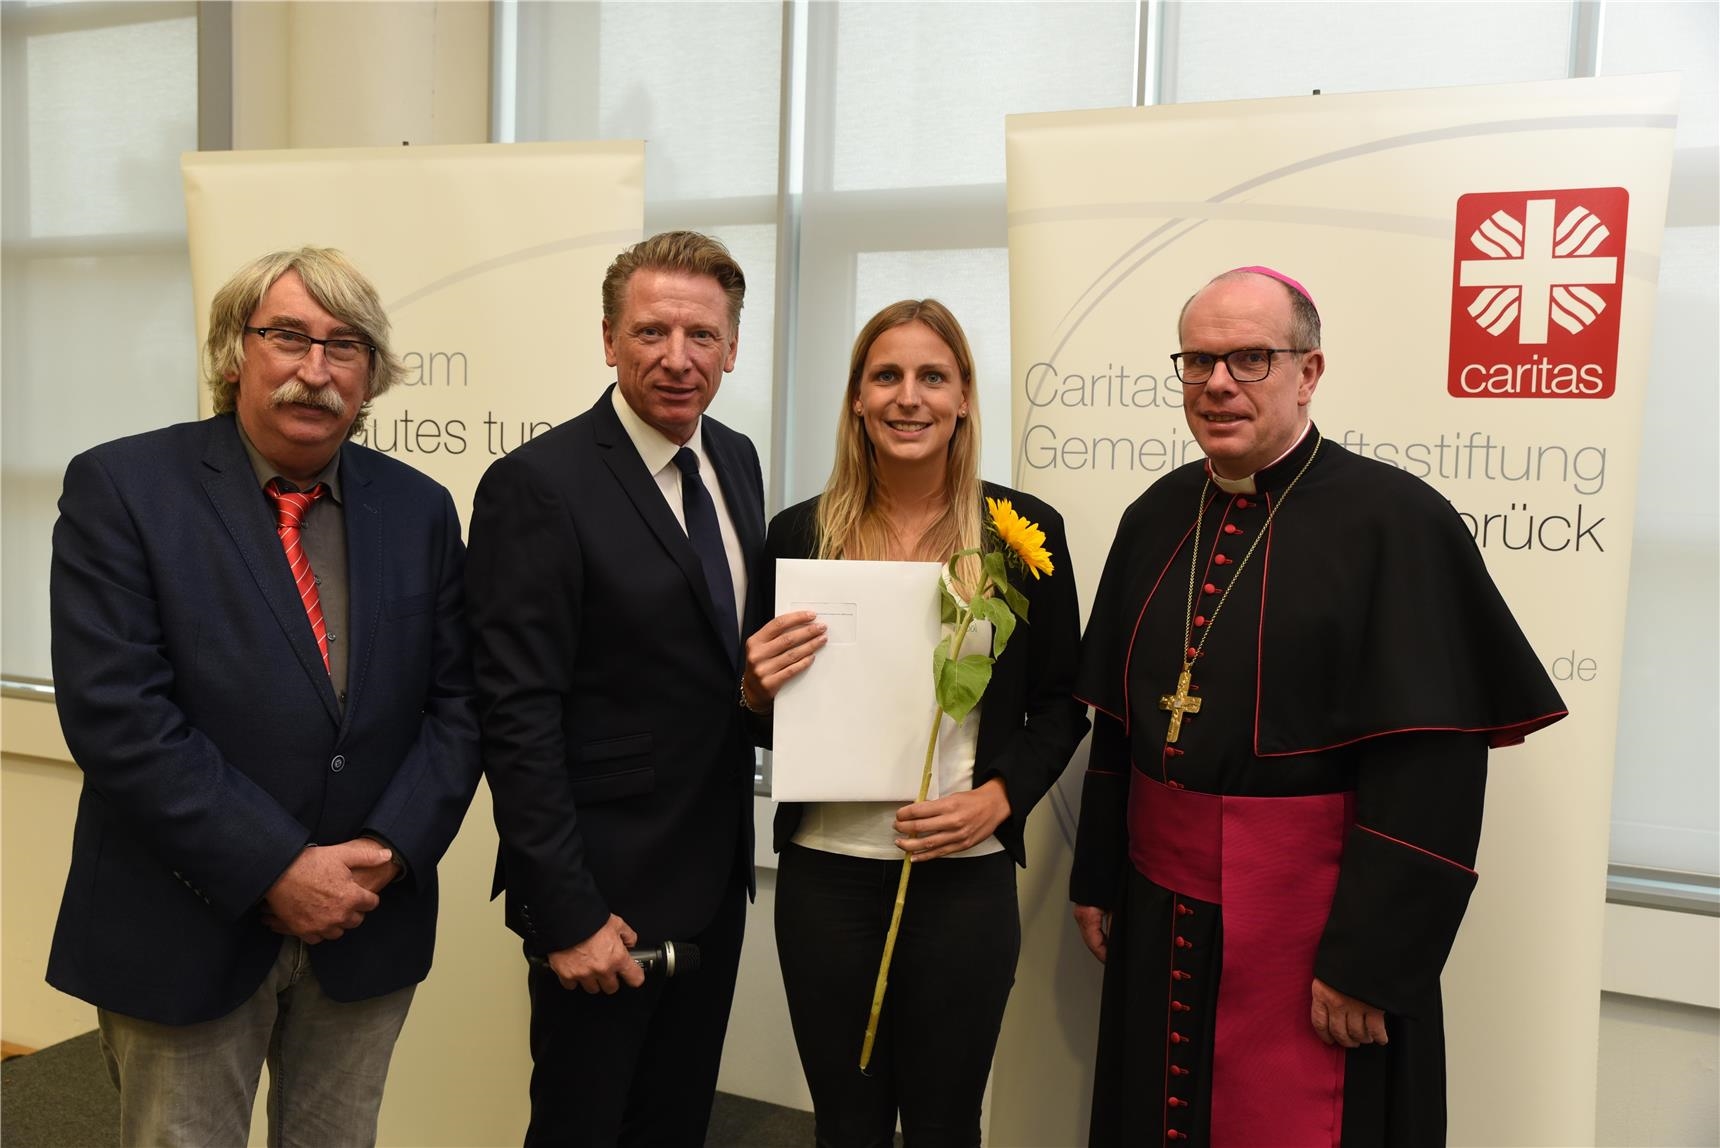 Sonnenschein-Preis-Verleihung 2018 in Nordhorn (Franziska Kückmann)